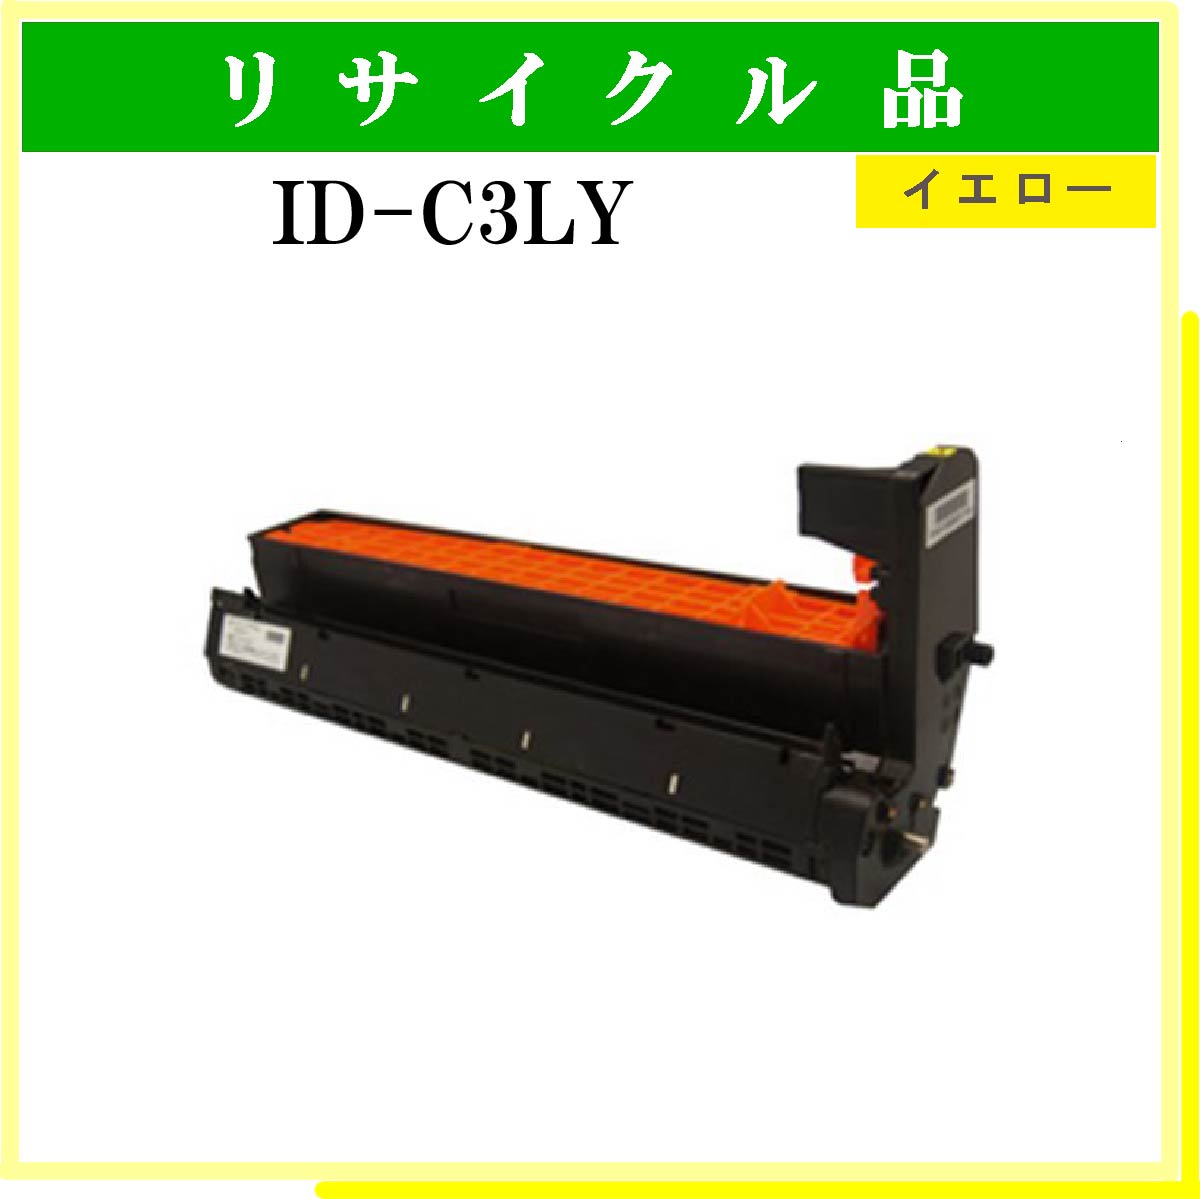 ID-C3LY